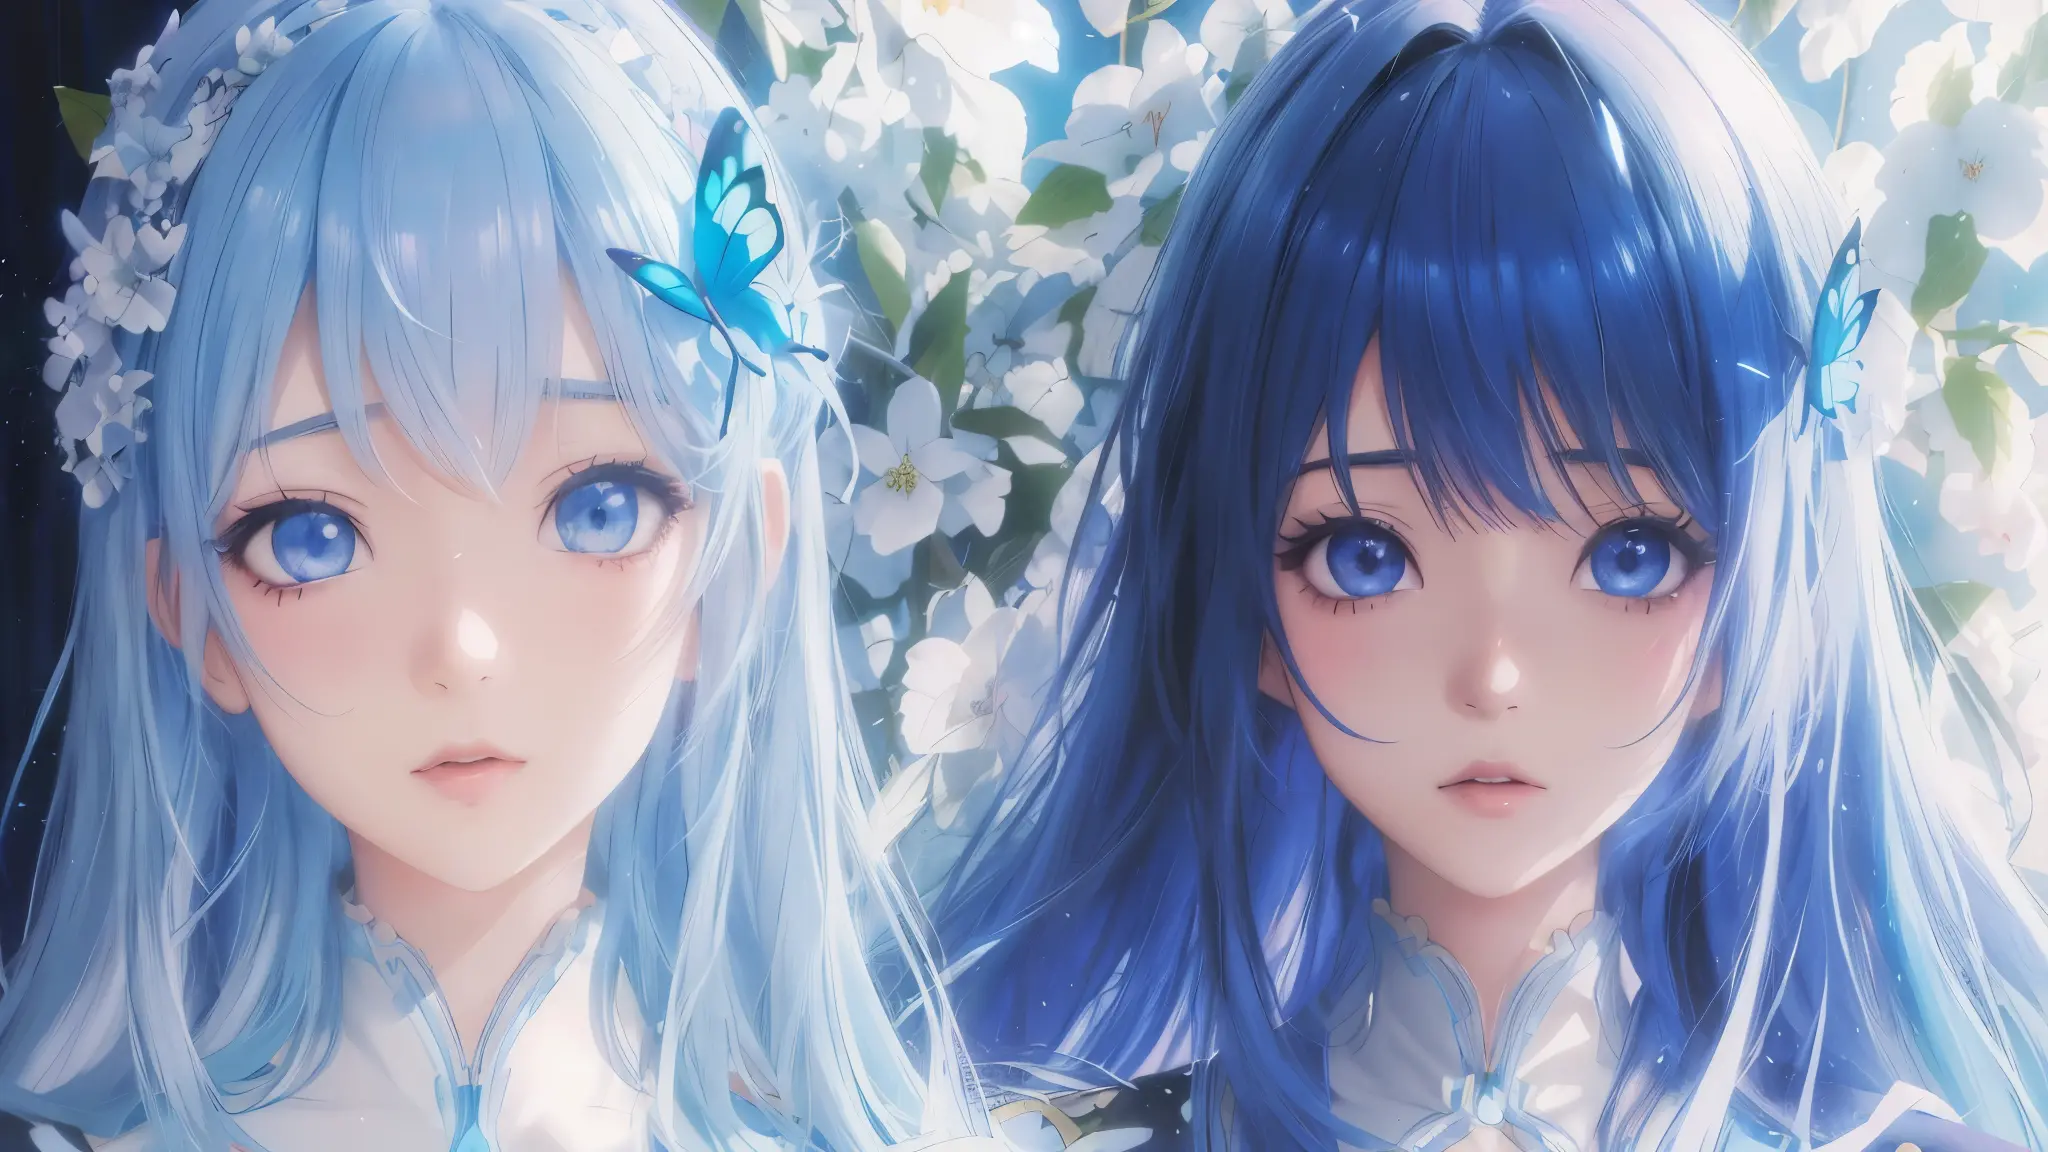 chica anime con cabello azul y ojos azules y una mariposa en el cabello, estilo anime 4k, Fondo de pantalla de arte anime 4k, Fo...